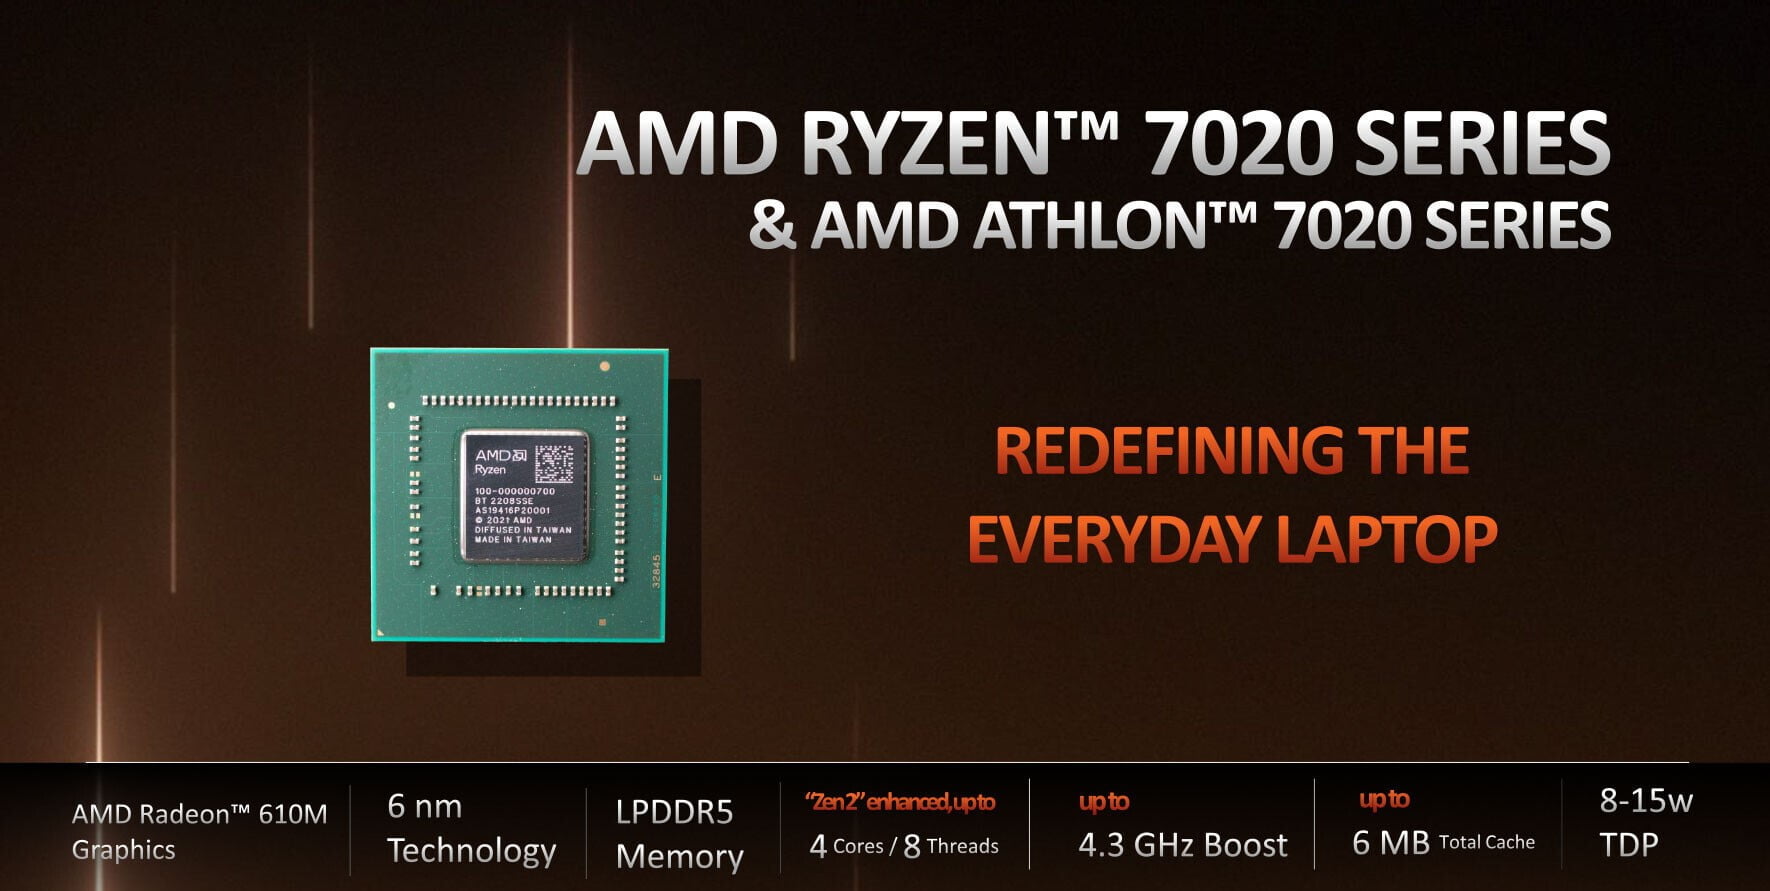 Bộ xử lý AMD Ryzen 7020 Series dành cho thiết bị di động mang lại hiệu suất cao và thời lượng pin dài cho người dùng hàng ngày